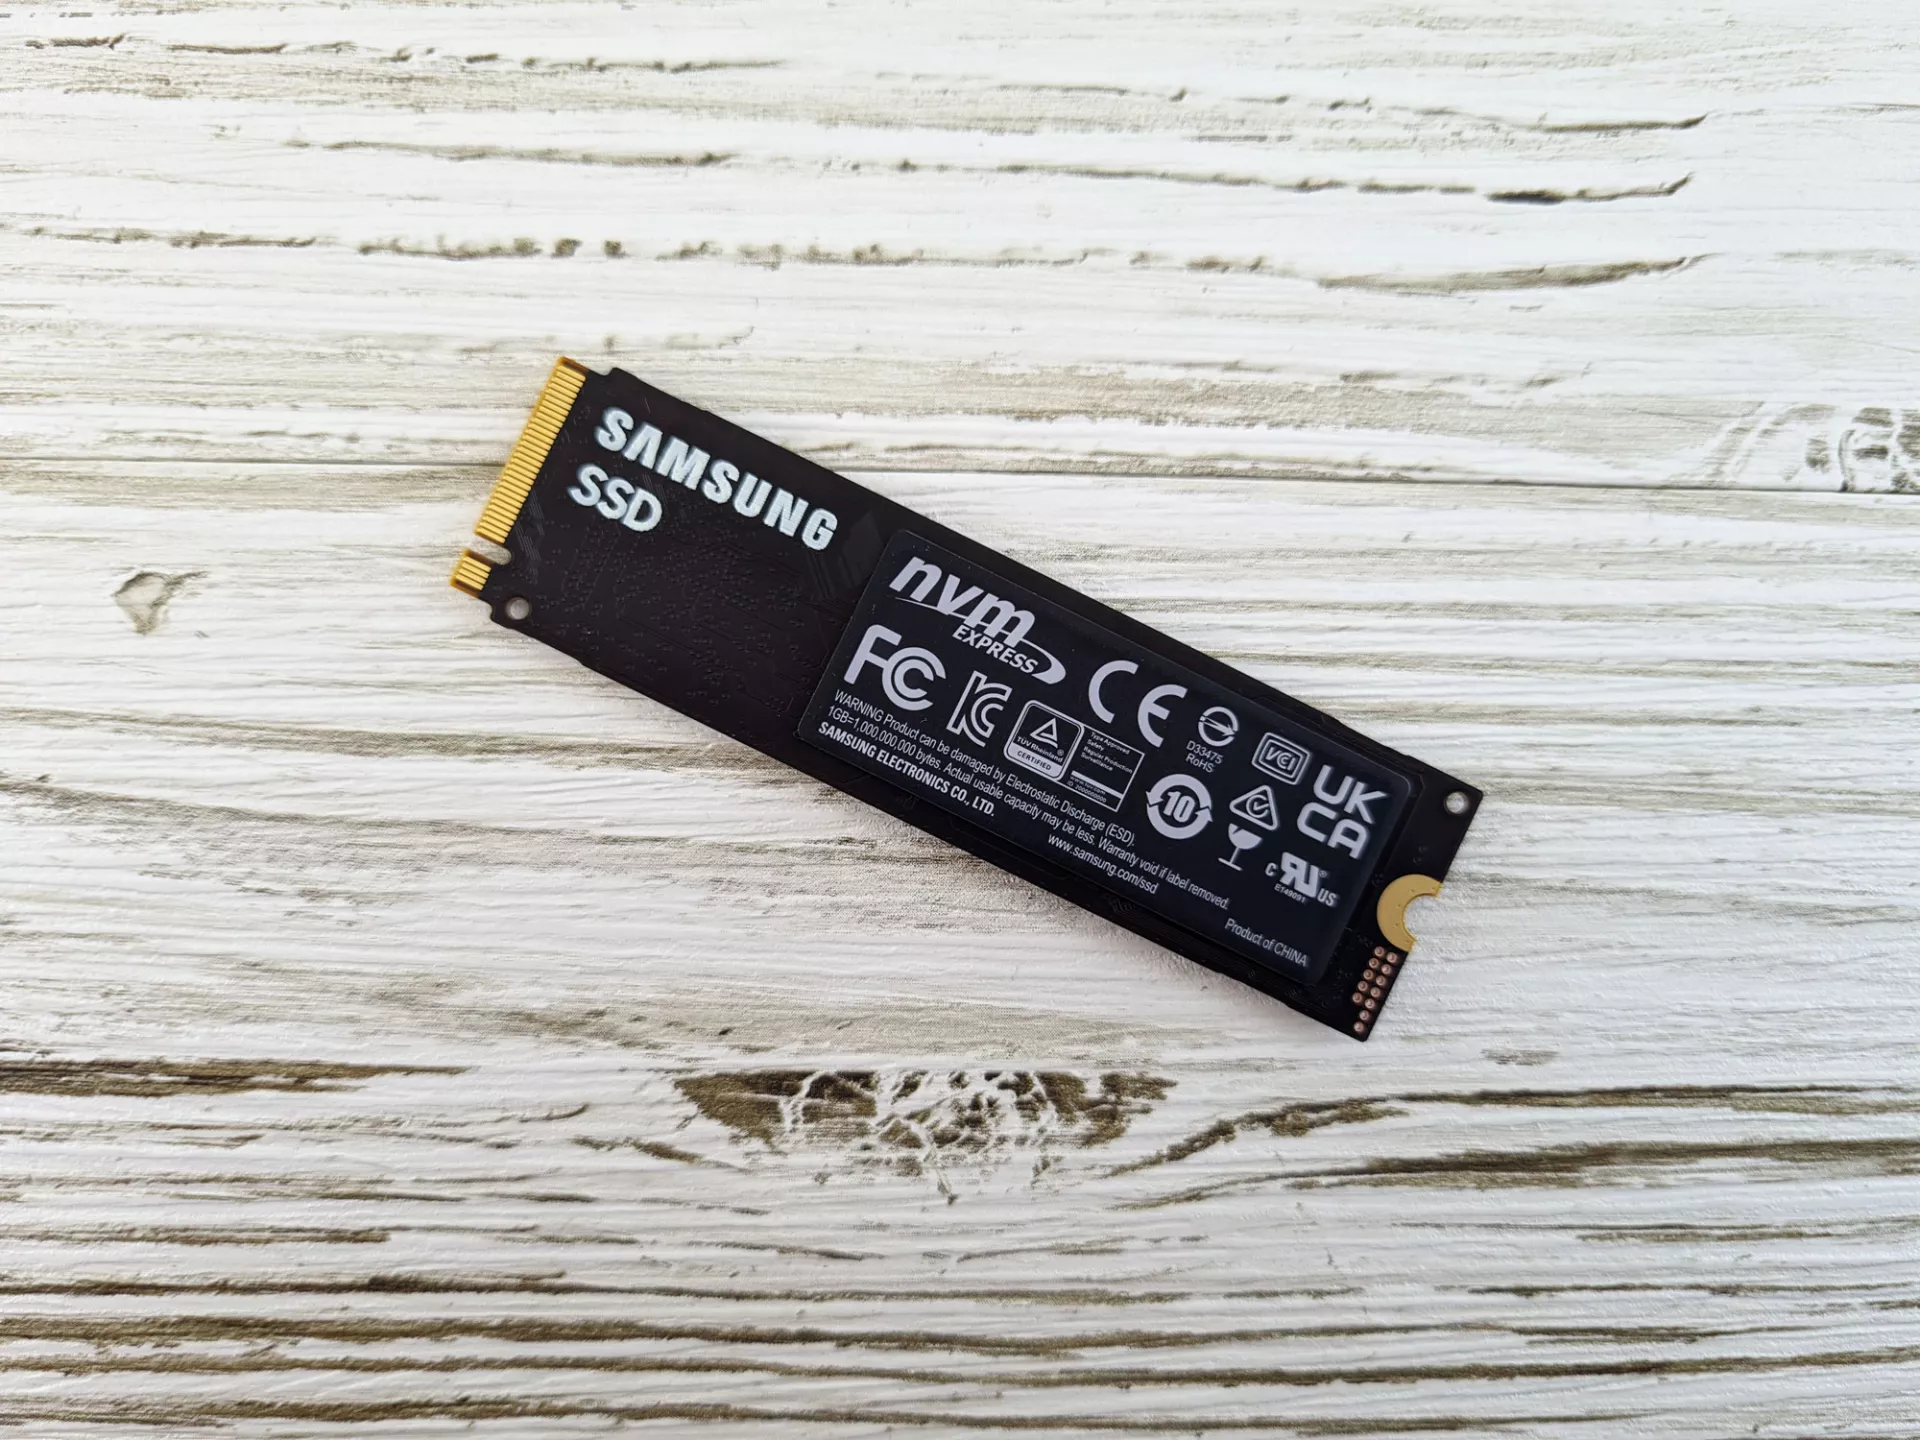 Тест-драйв SSD Samsung 980 1000 GB MZ-V8V1T0BW